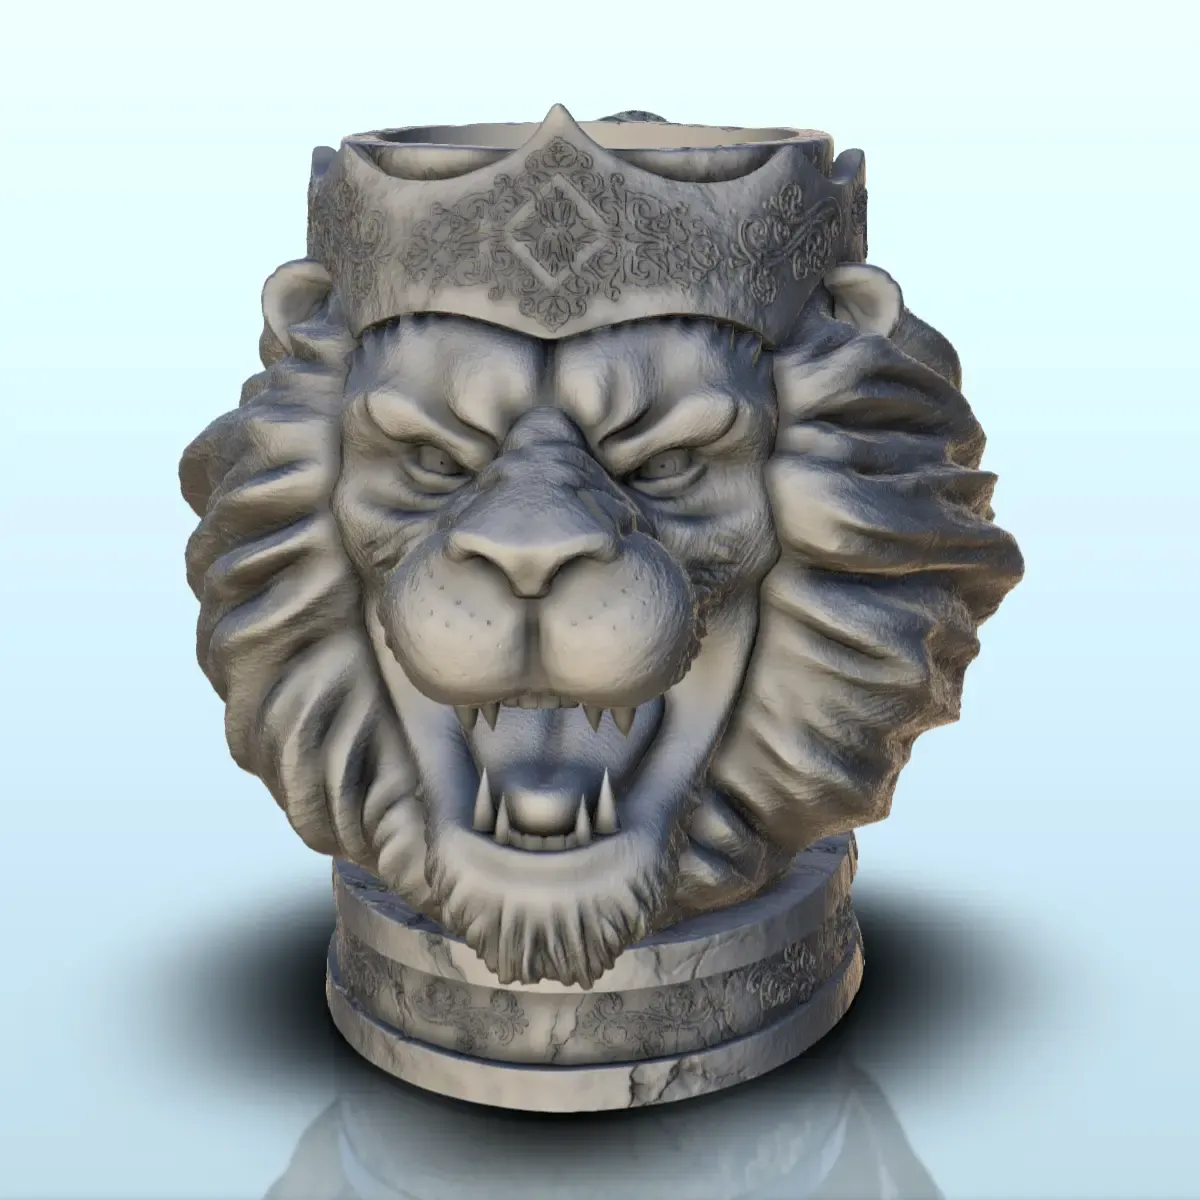 King lion dice mug (18) - beer can holder